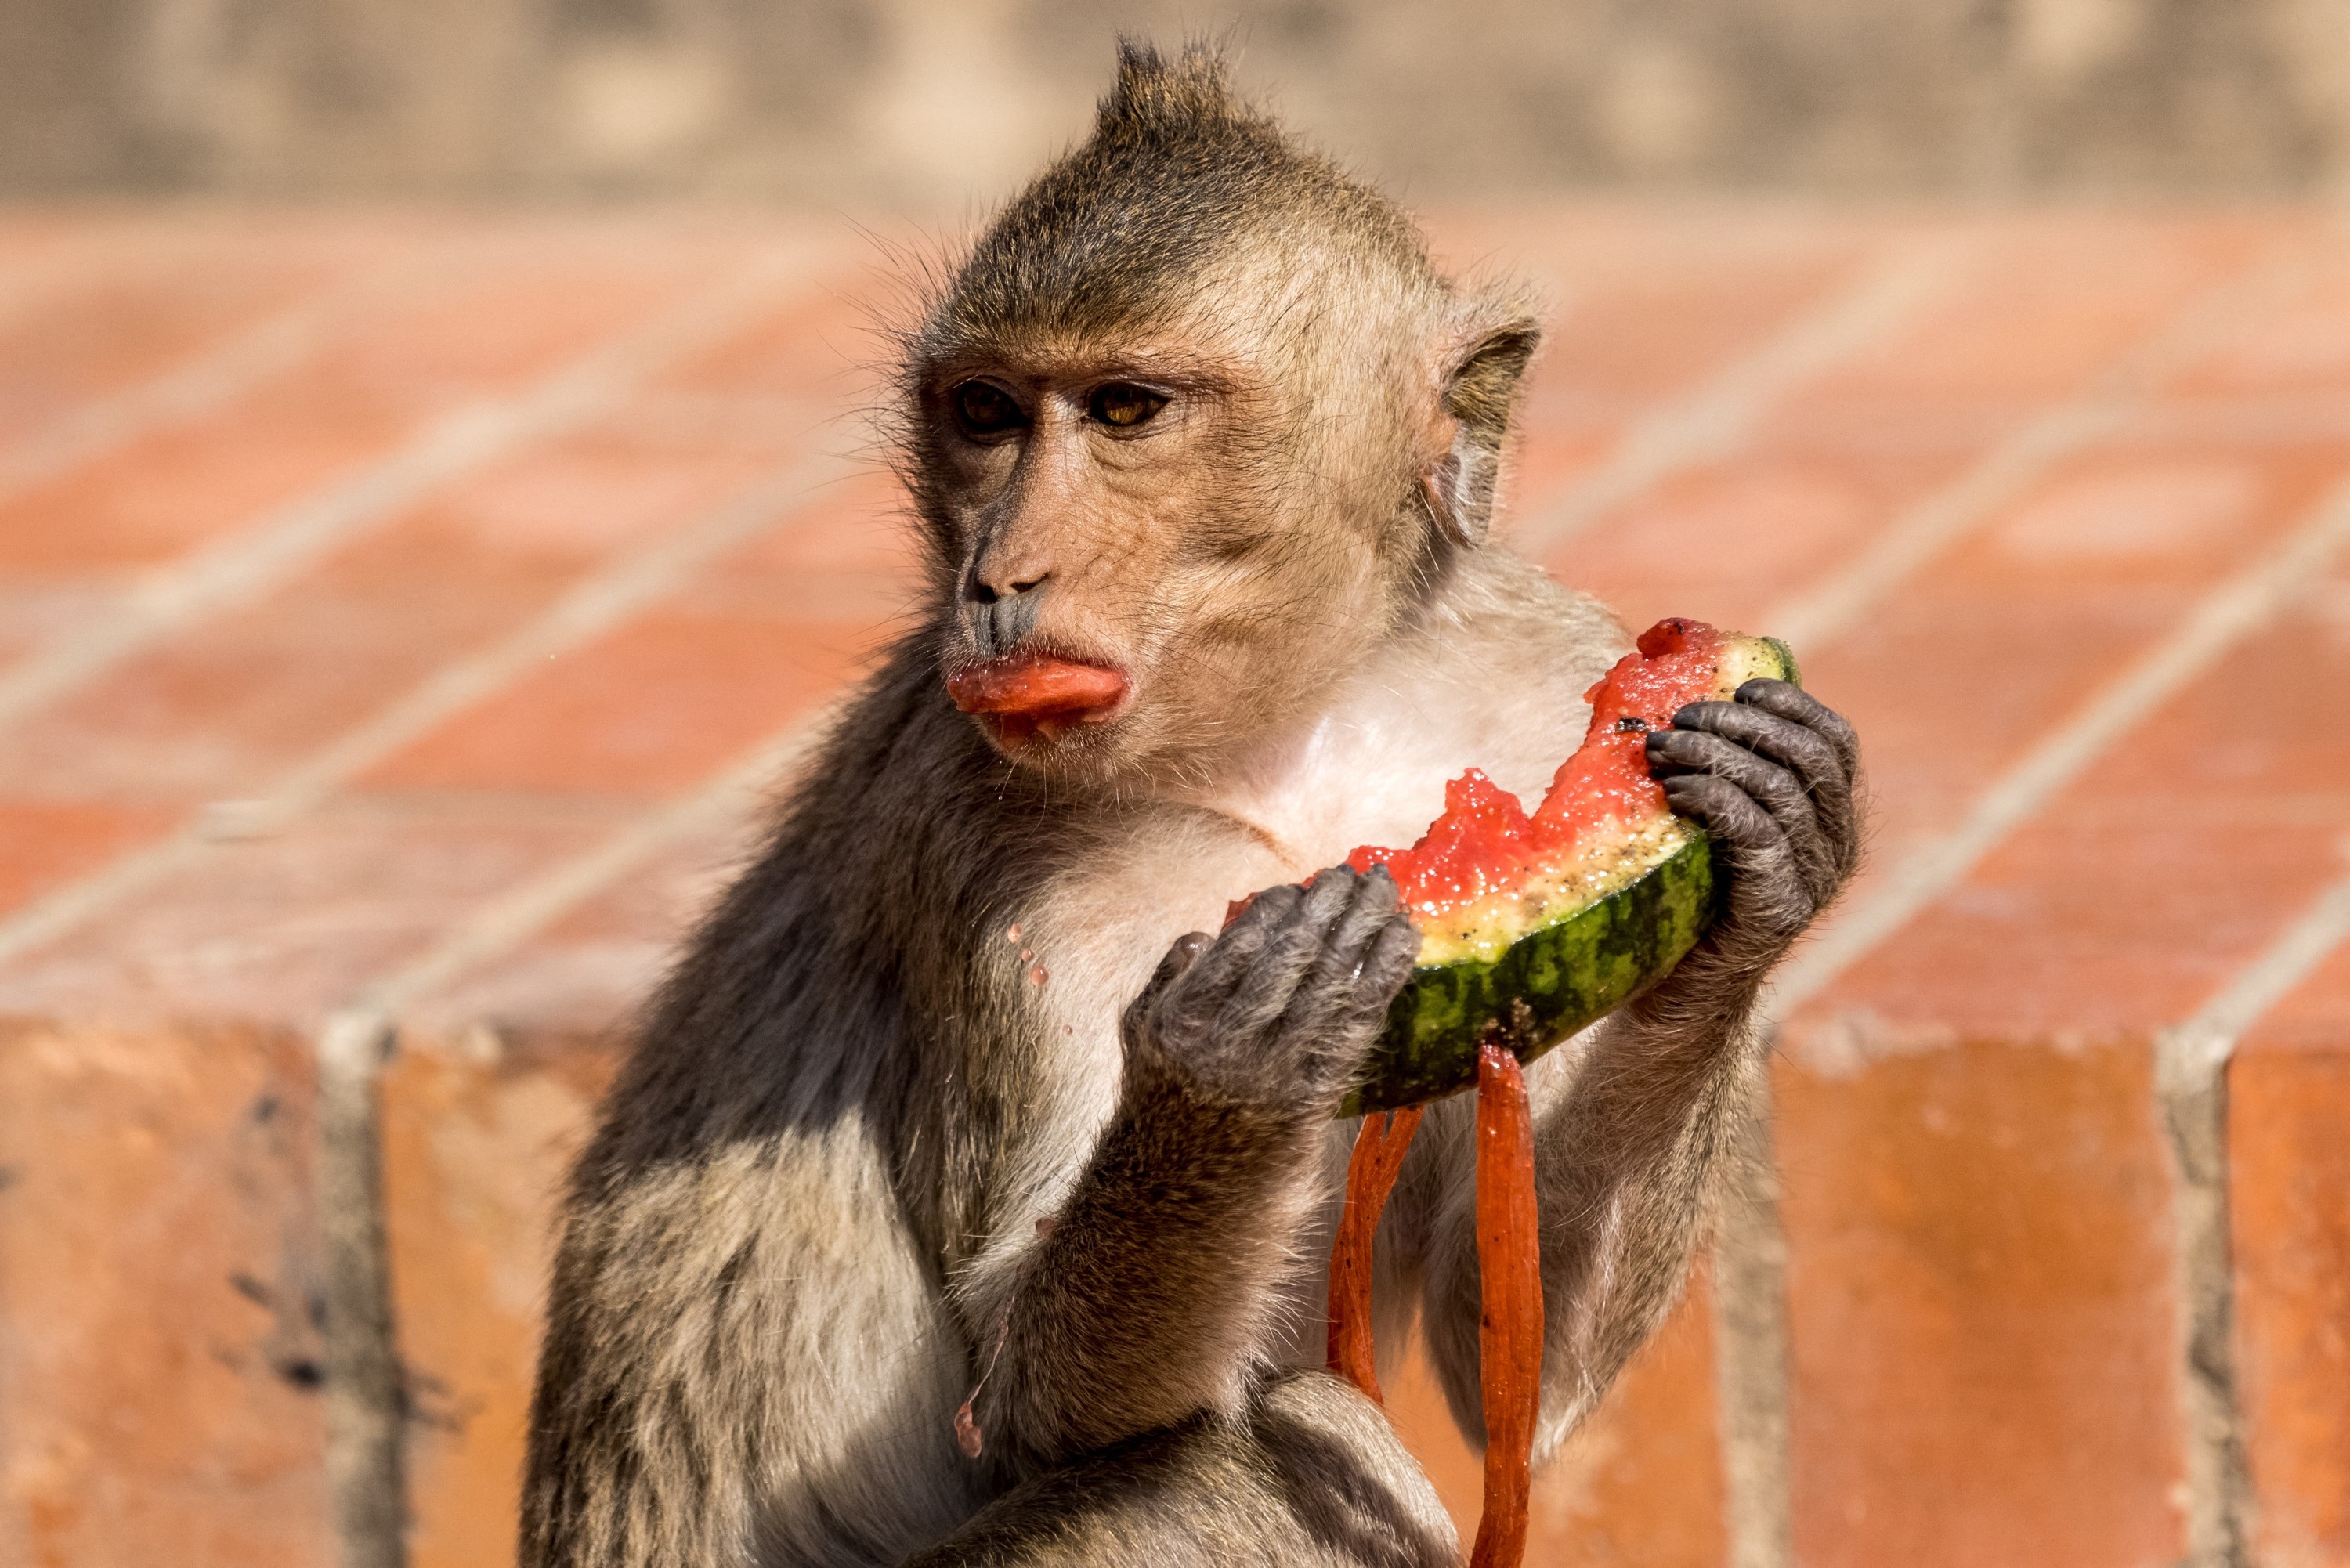 Wikipédia refuse de retirer cette photo de singe car c'est un